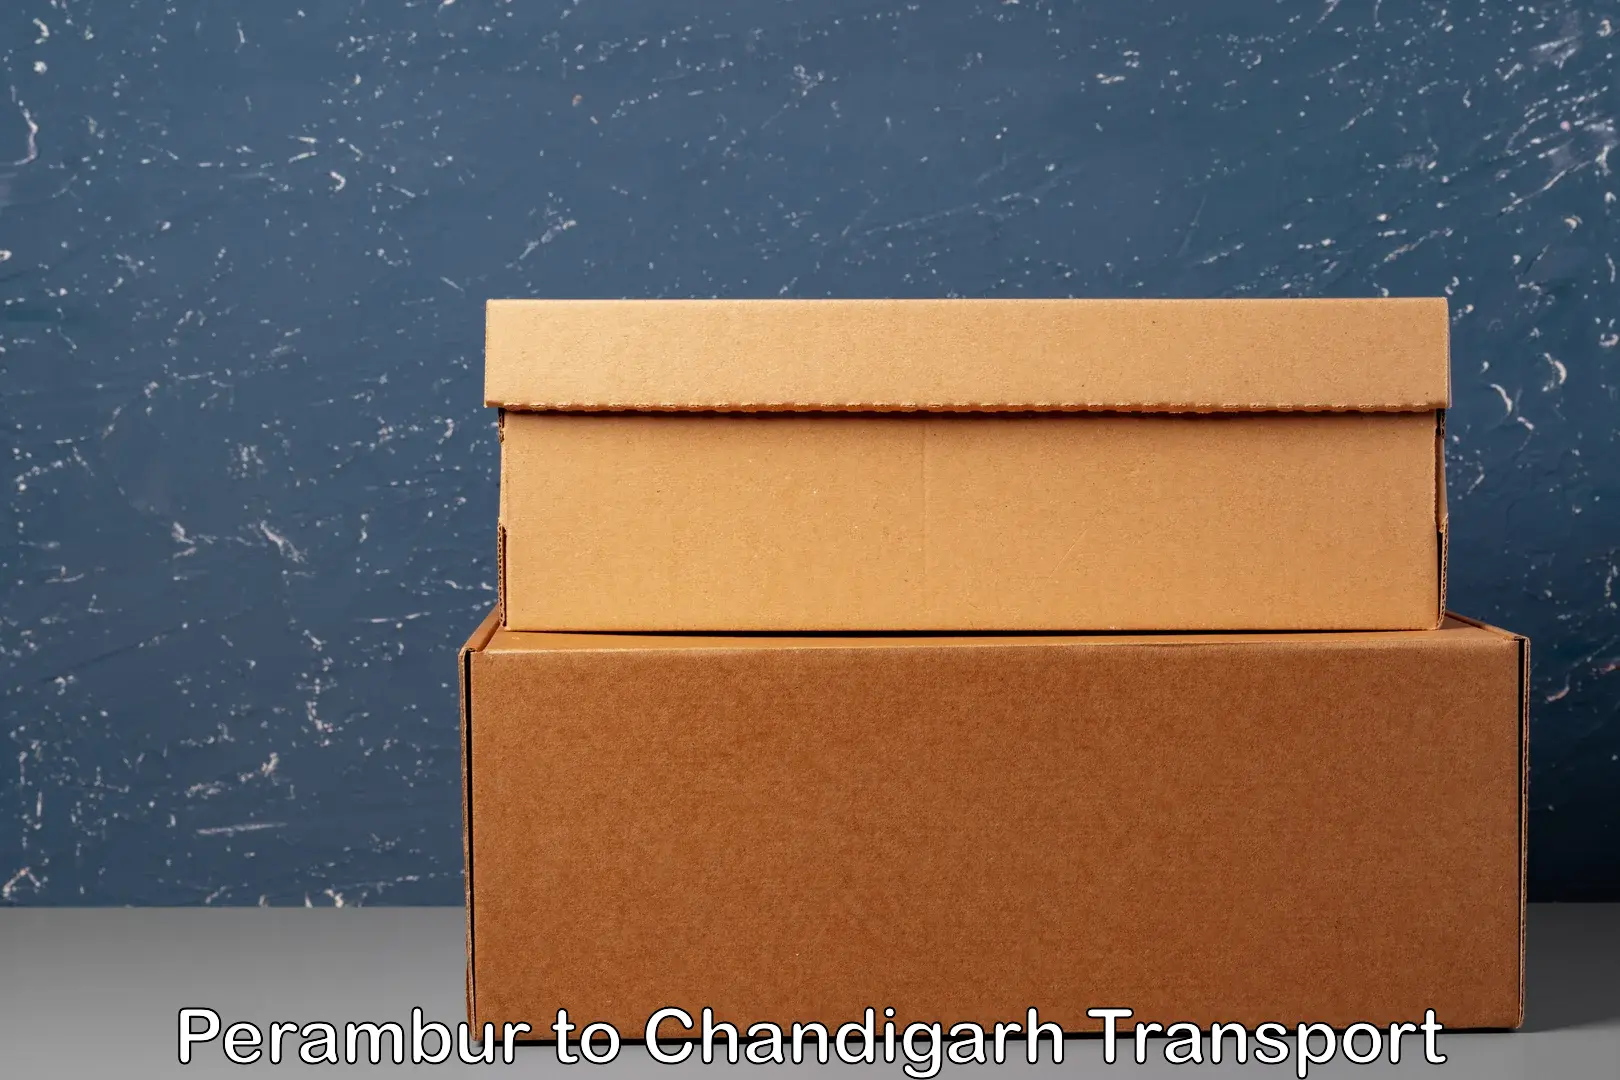 Online transport service Perambur to Chandigarh